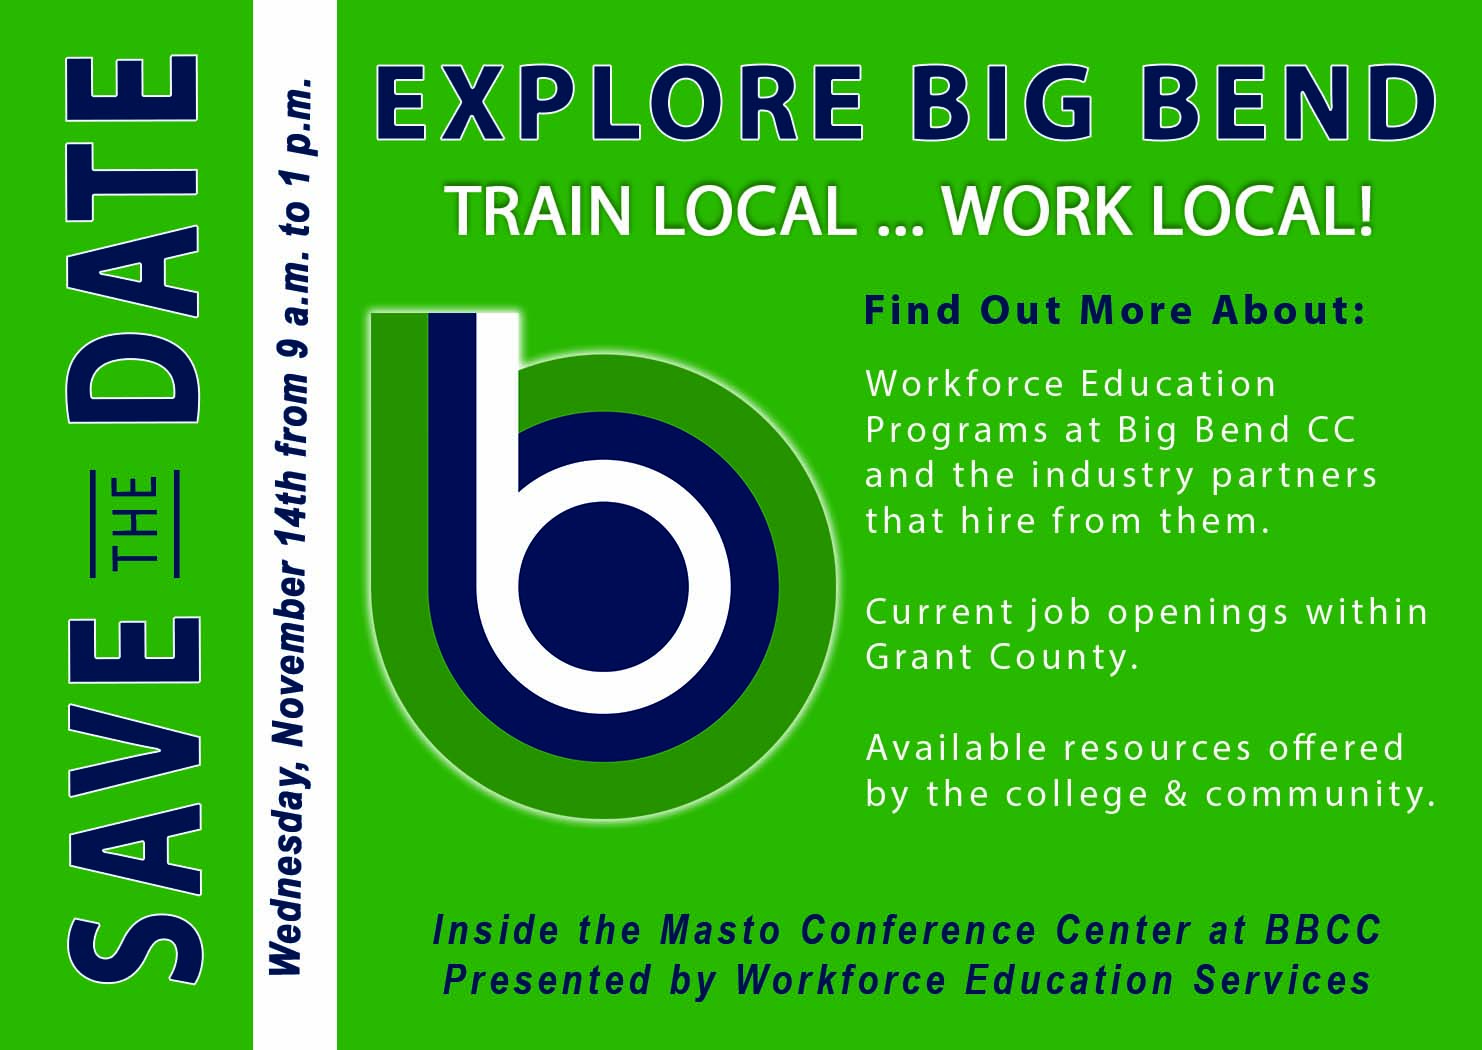 Explore Big Bend event poster